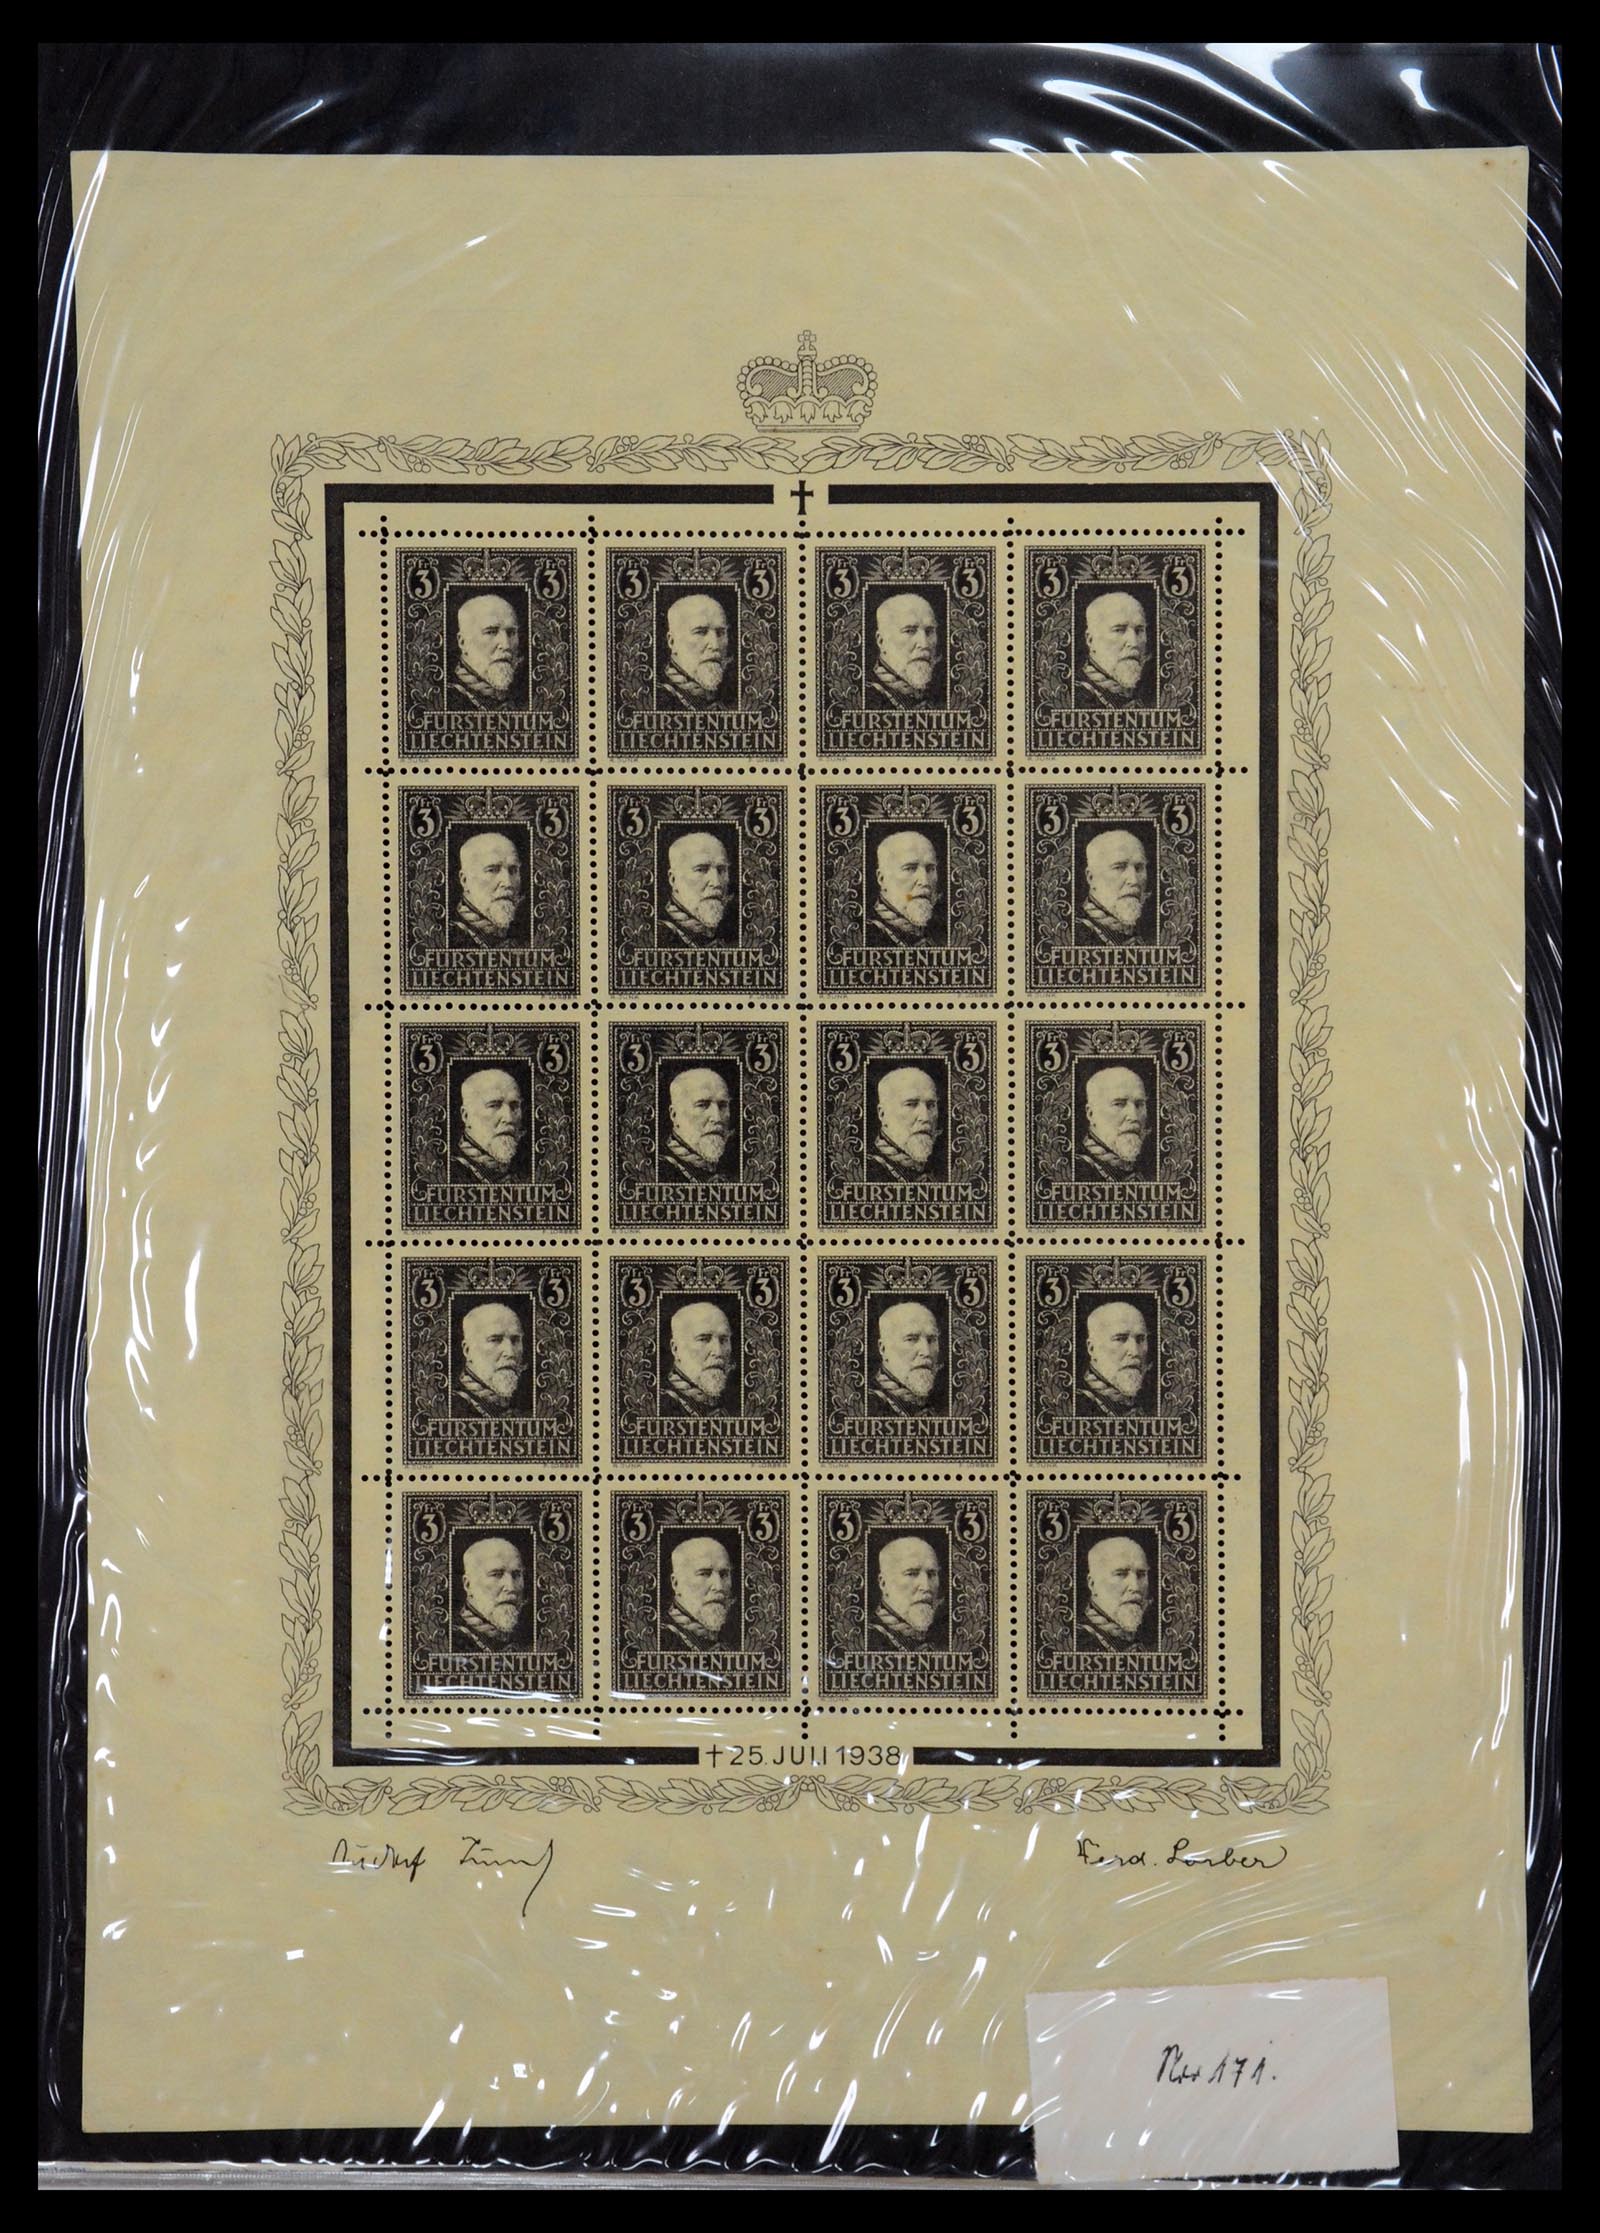 36280 001 - Stamp collection 36280 Liechtenstein souvenir sheets and sheetlets 1934-